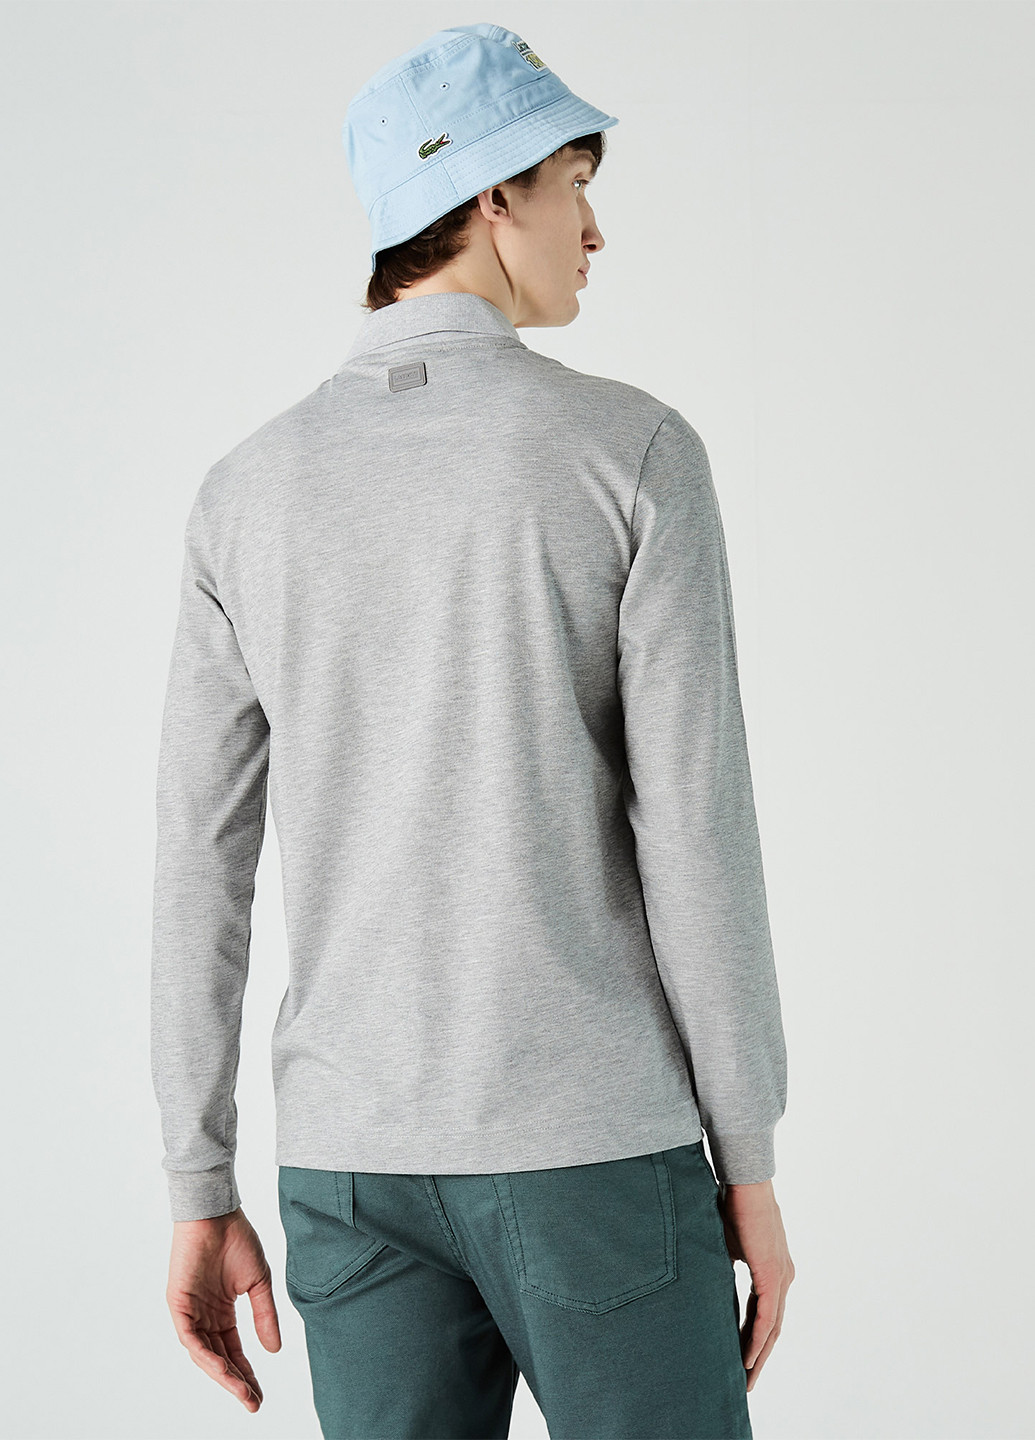 Светло-серая футболка-поло для мужчин Lacoste меланжевая